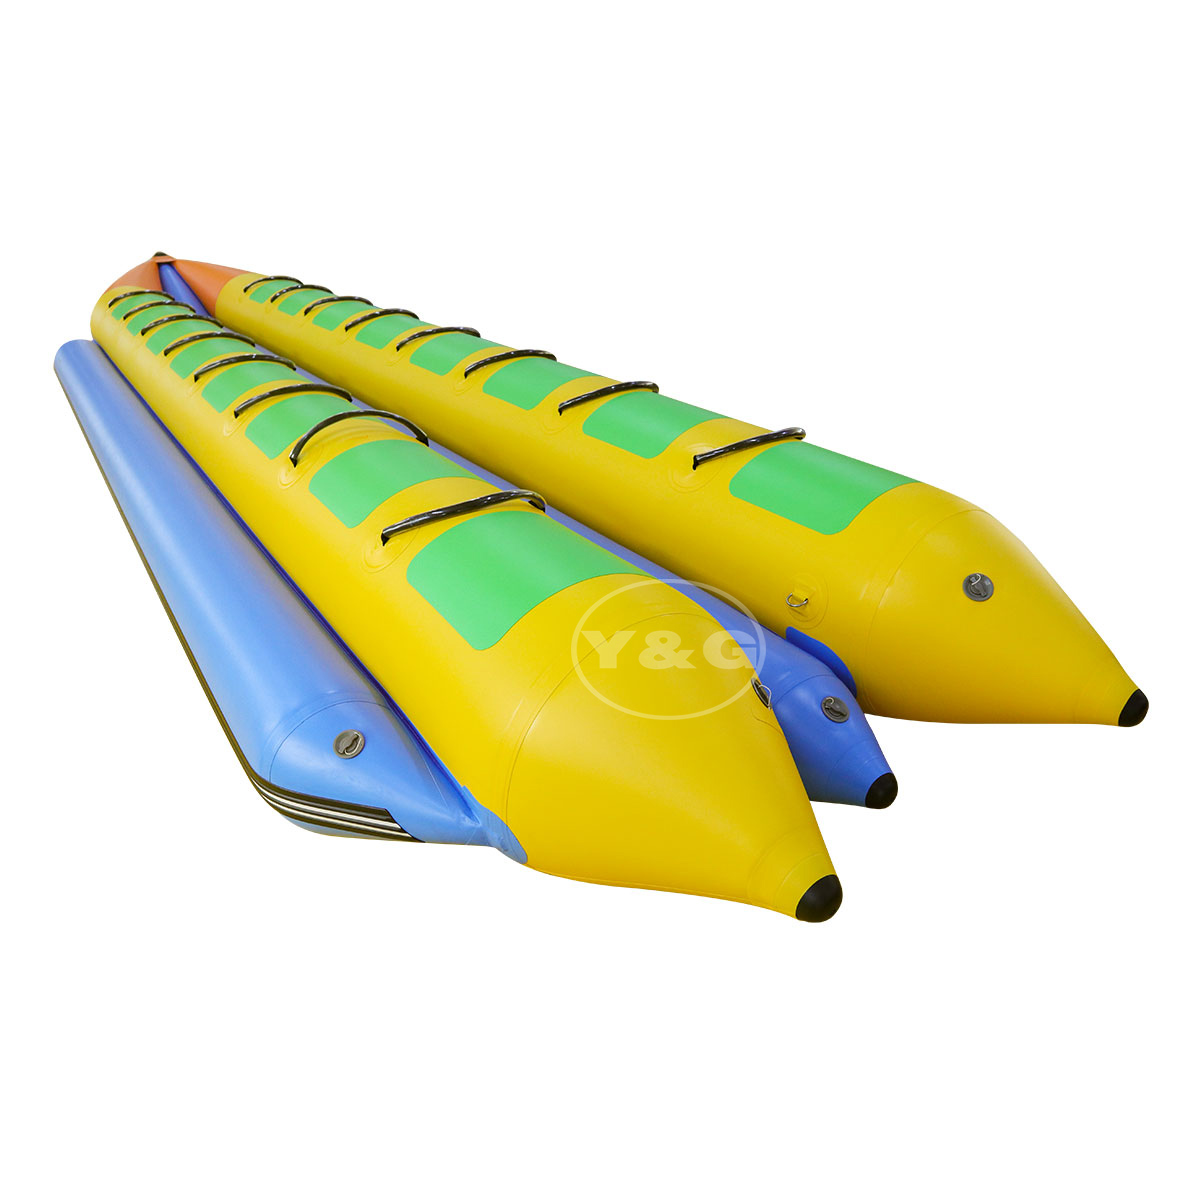 Banana Boat inflable para 16 personas04